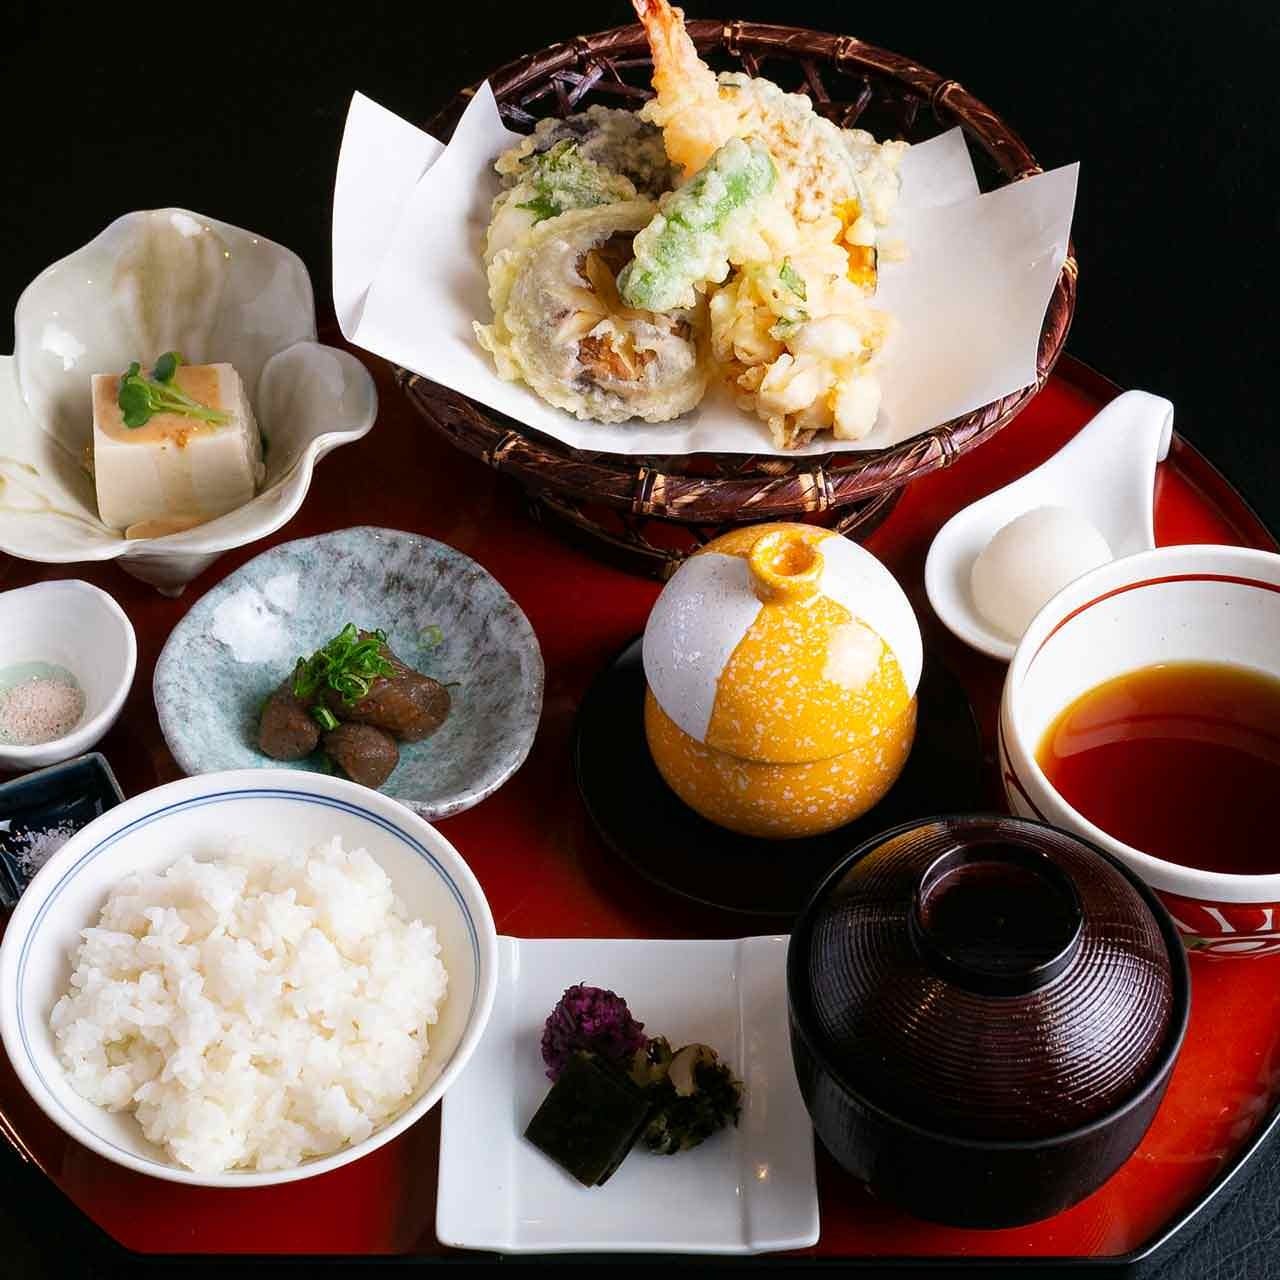 お昼限定メニュー
「天ぷら6種と季節のあじわい 天ぷら御膳」